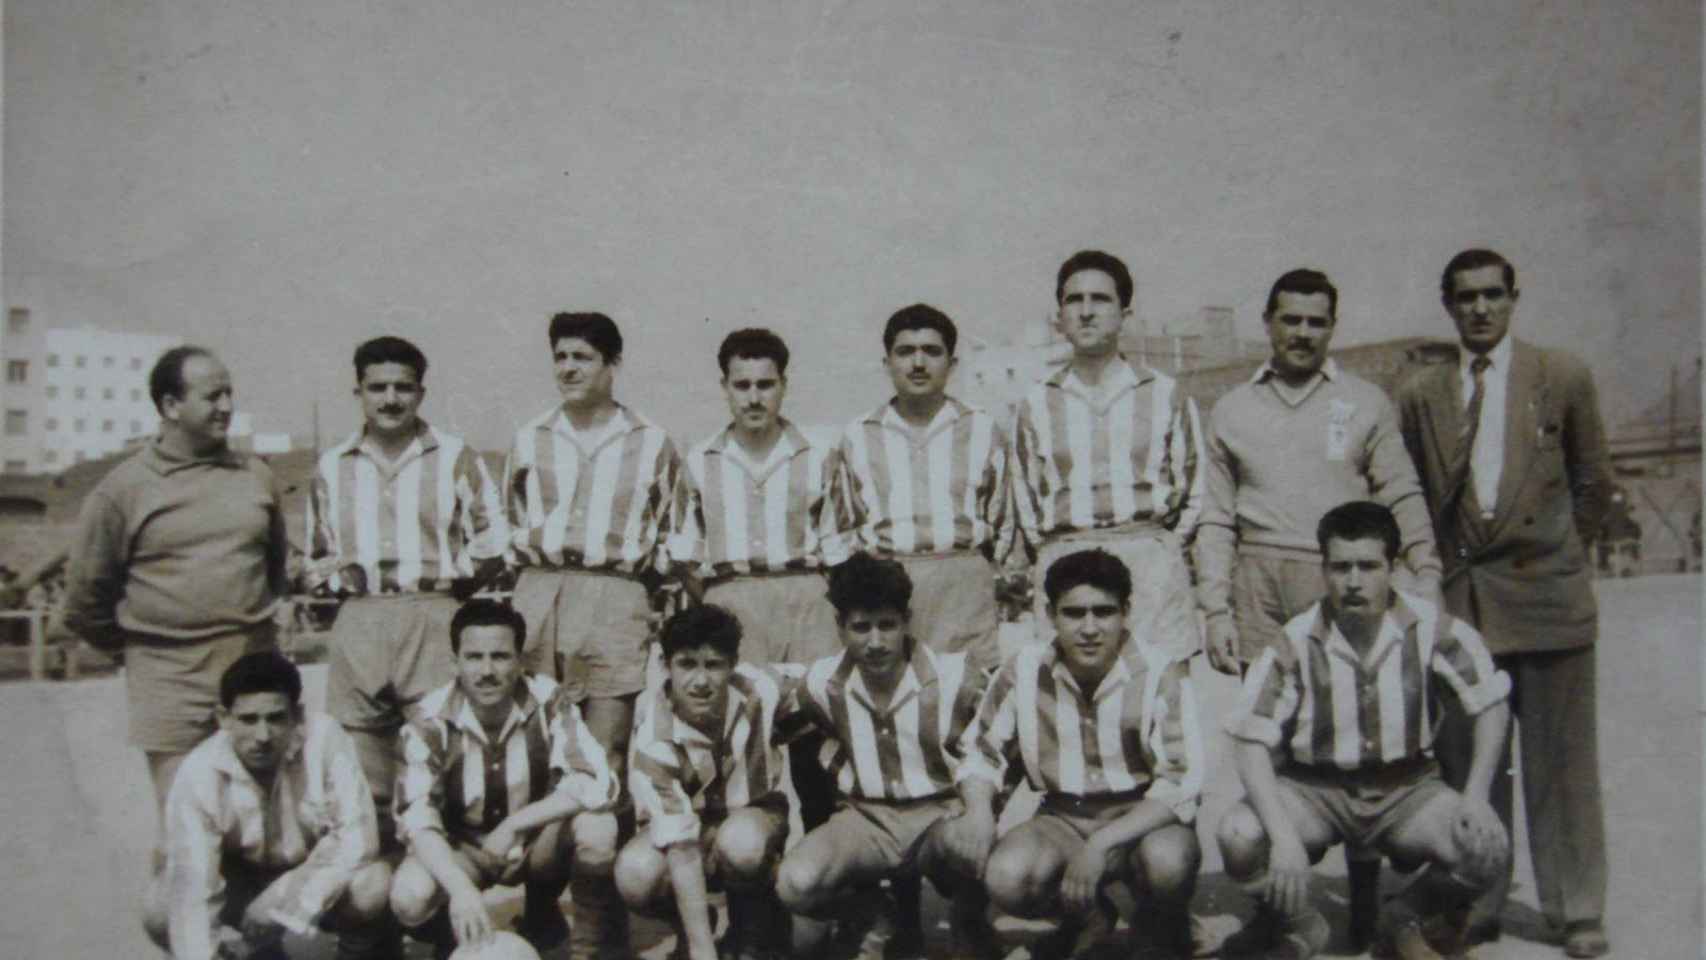 Equipo del Alzamora CF en 1950 / BLOG DE L'ARXIU HISTÓRIC DE NOU BARRIS